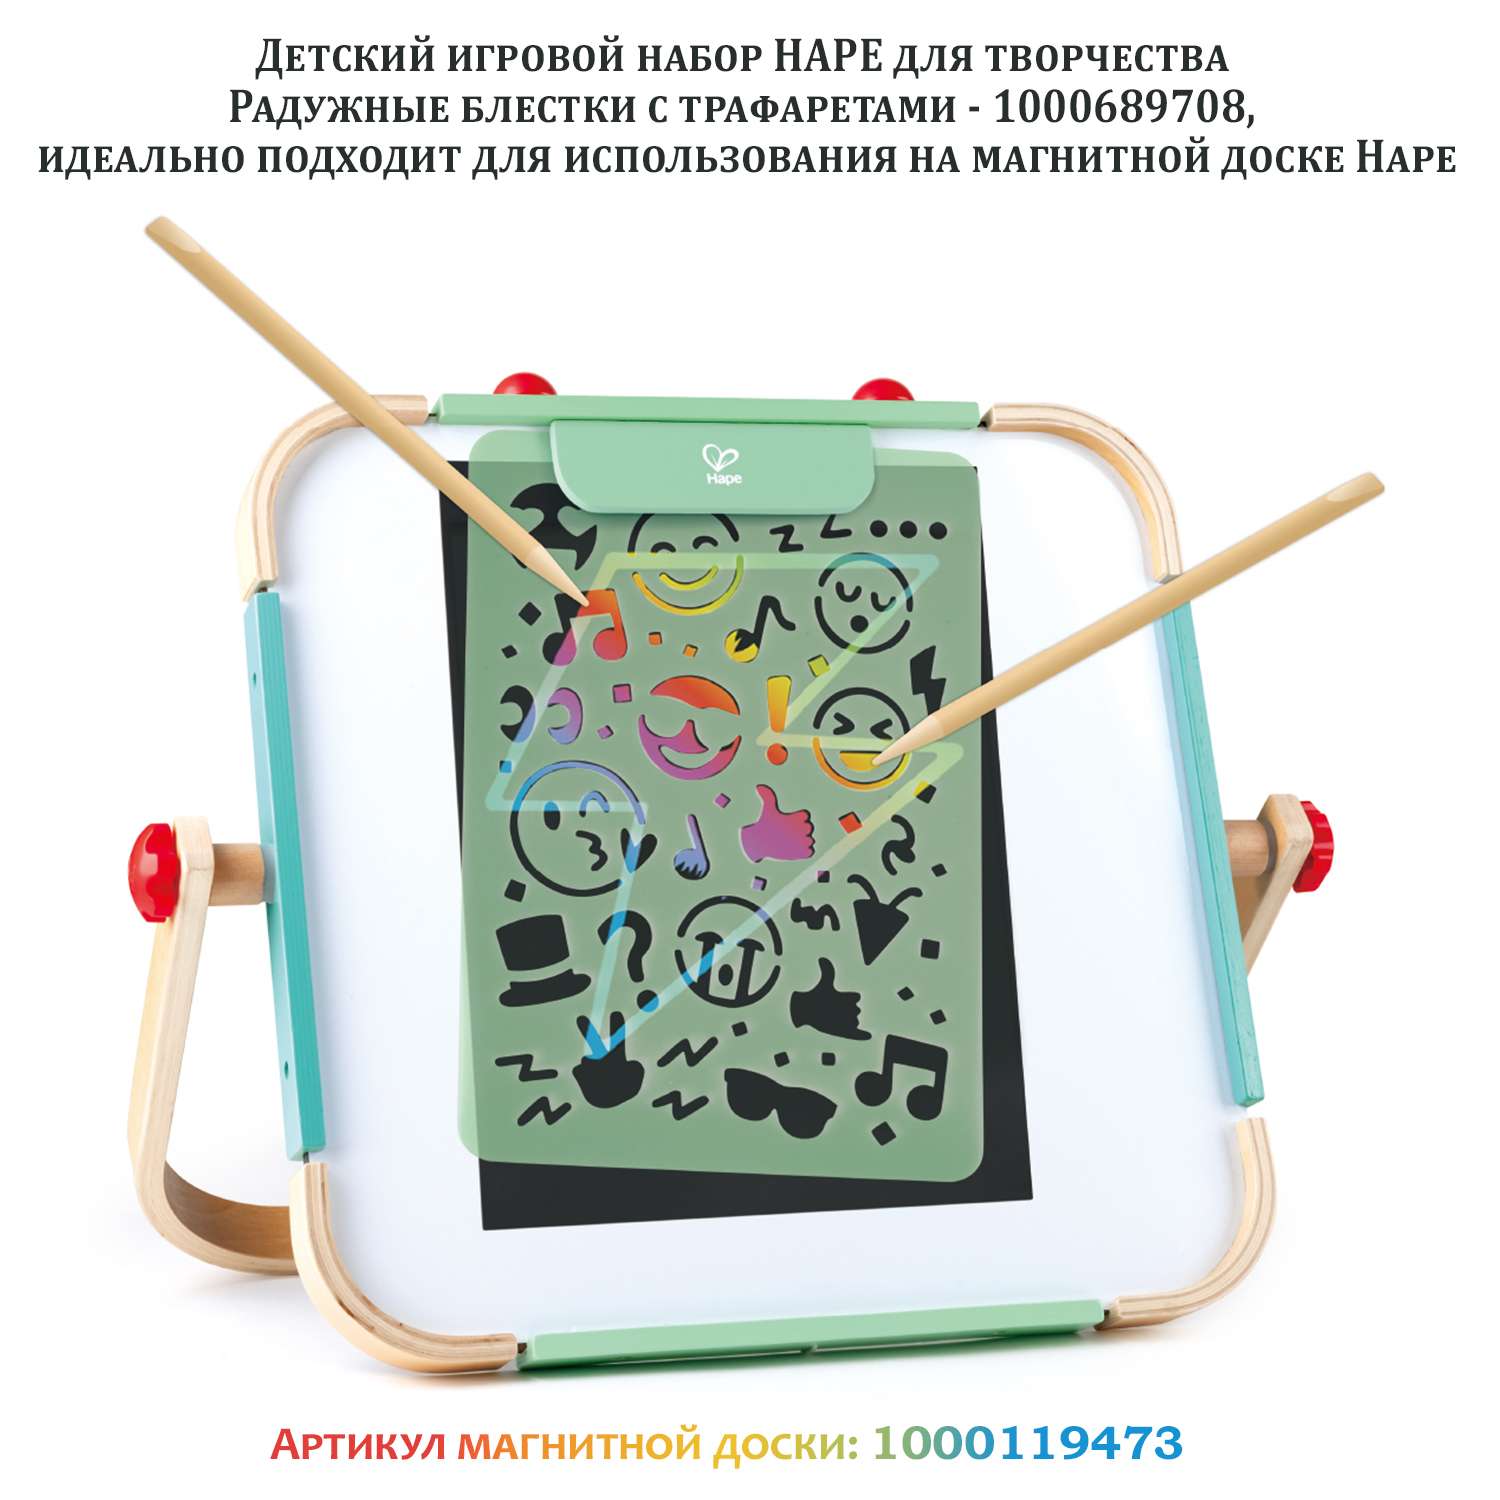 Детский игровой набор HAPE для творчества Радужные блестки с трафаретами - фото 4